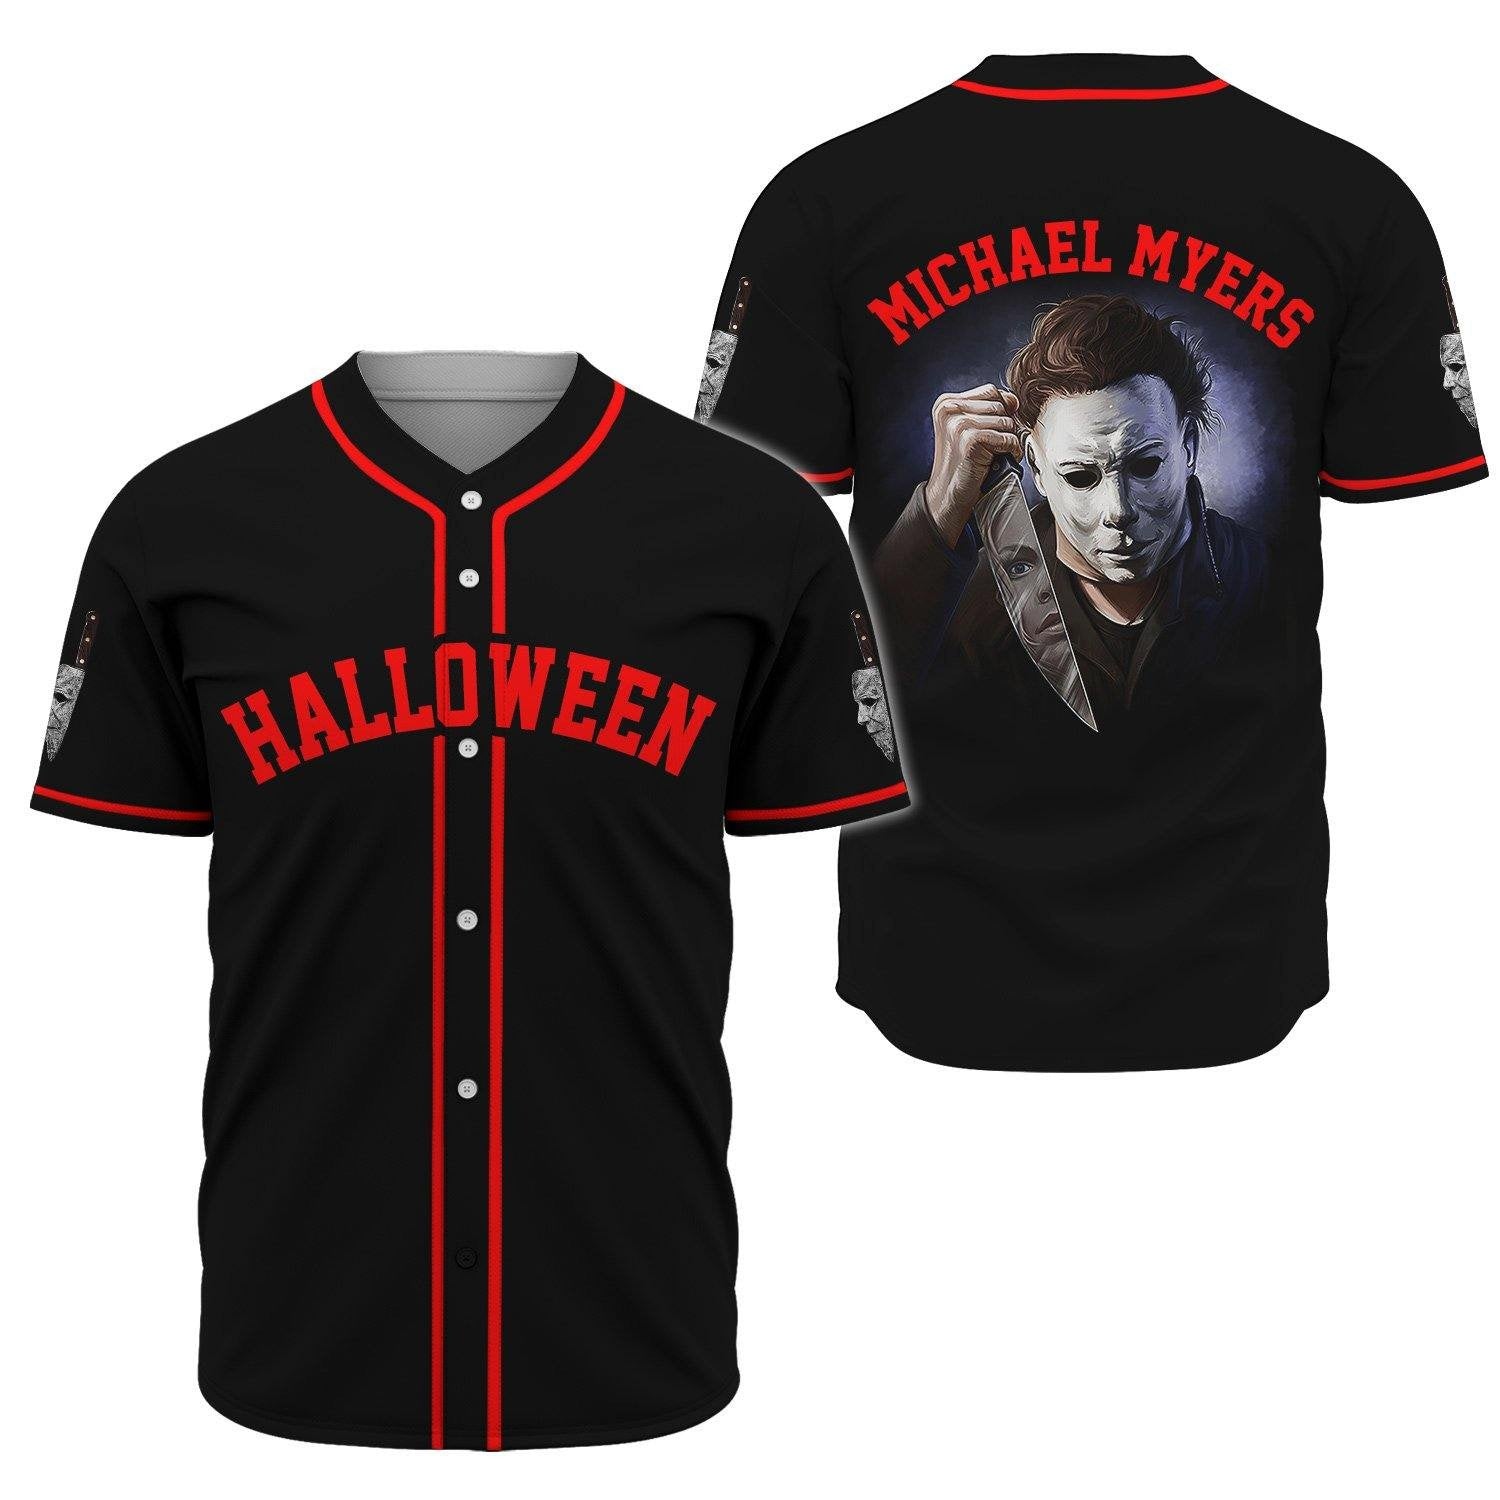 Michael Myers – Halloween Jersey Shirt